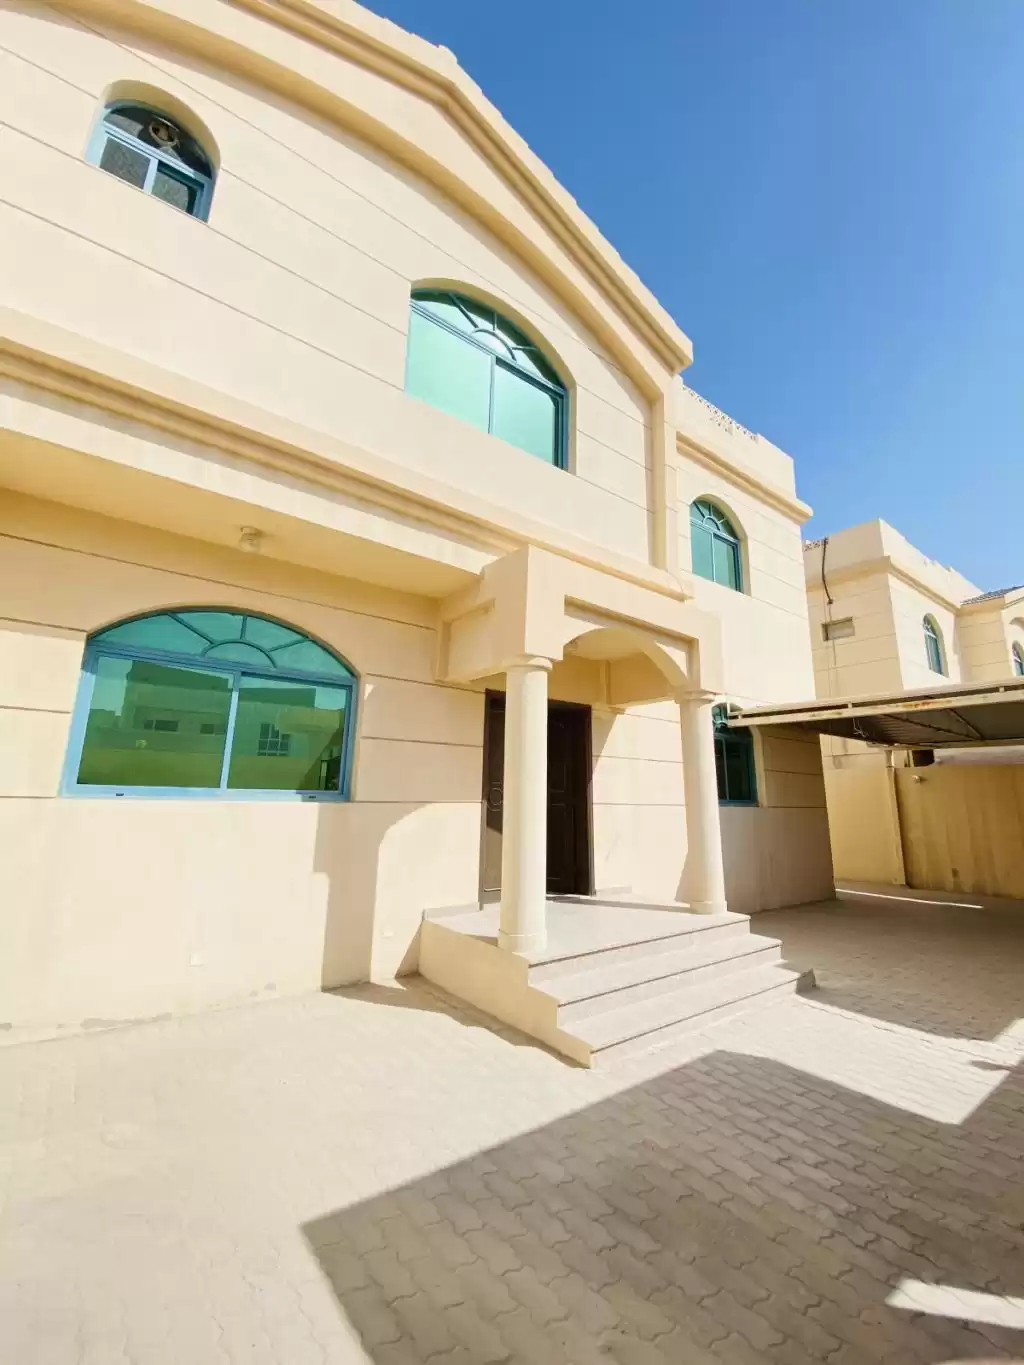 Residencial Listo Propiedad 5 habitaciones U / F Villa Standerlone  alquiler en al-sad , Doha #10016 - 1  image 